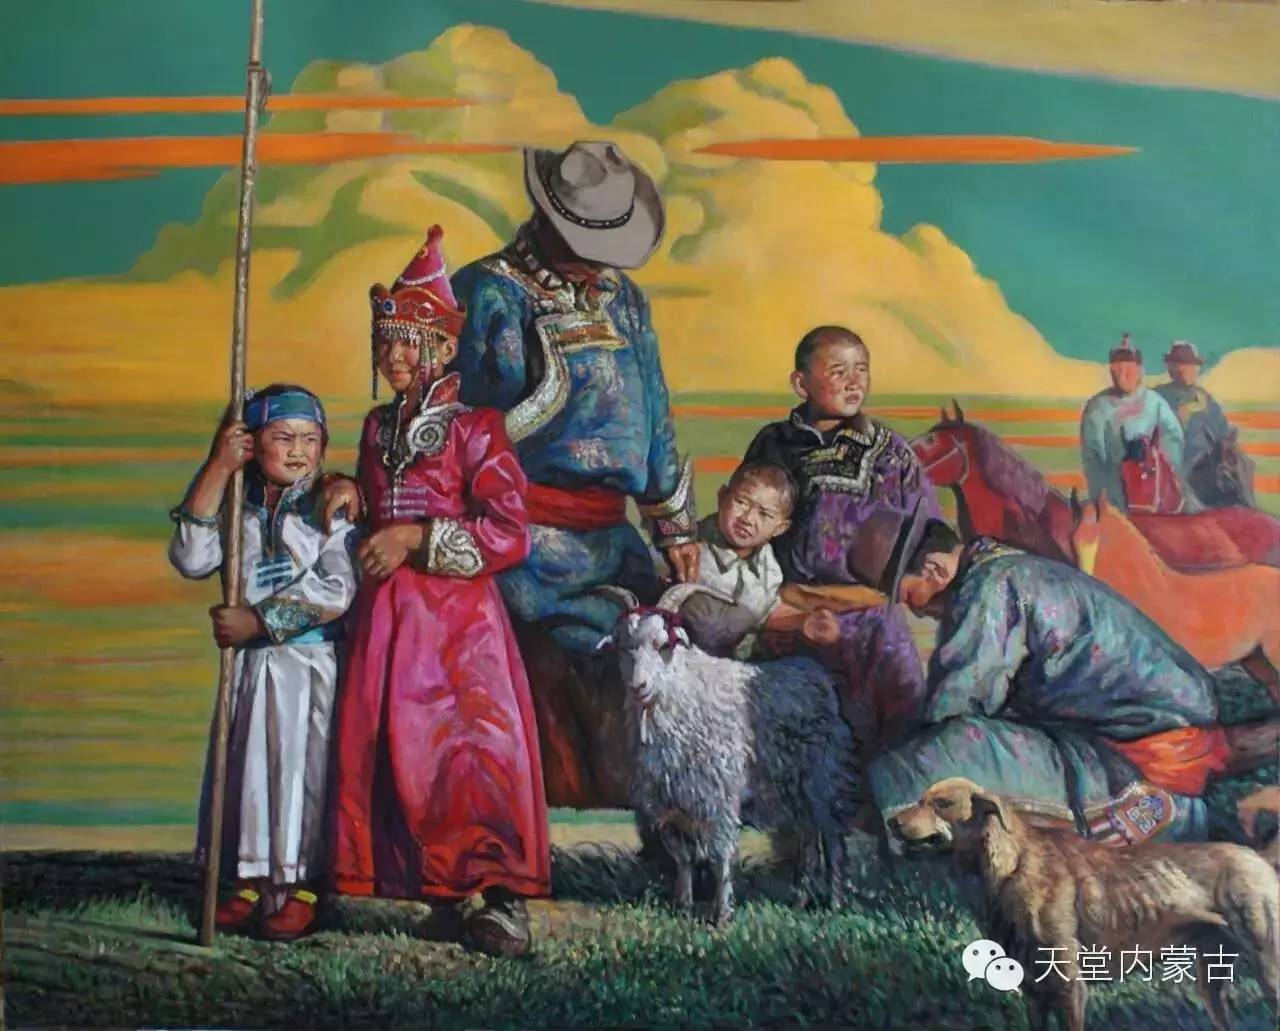 蒙古草原风景 让人向往 蒙古国著名画家D.泰温吉日嘎拉 油画作品-草原元素---蒙古元素 Mongolia Elements